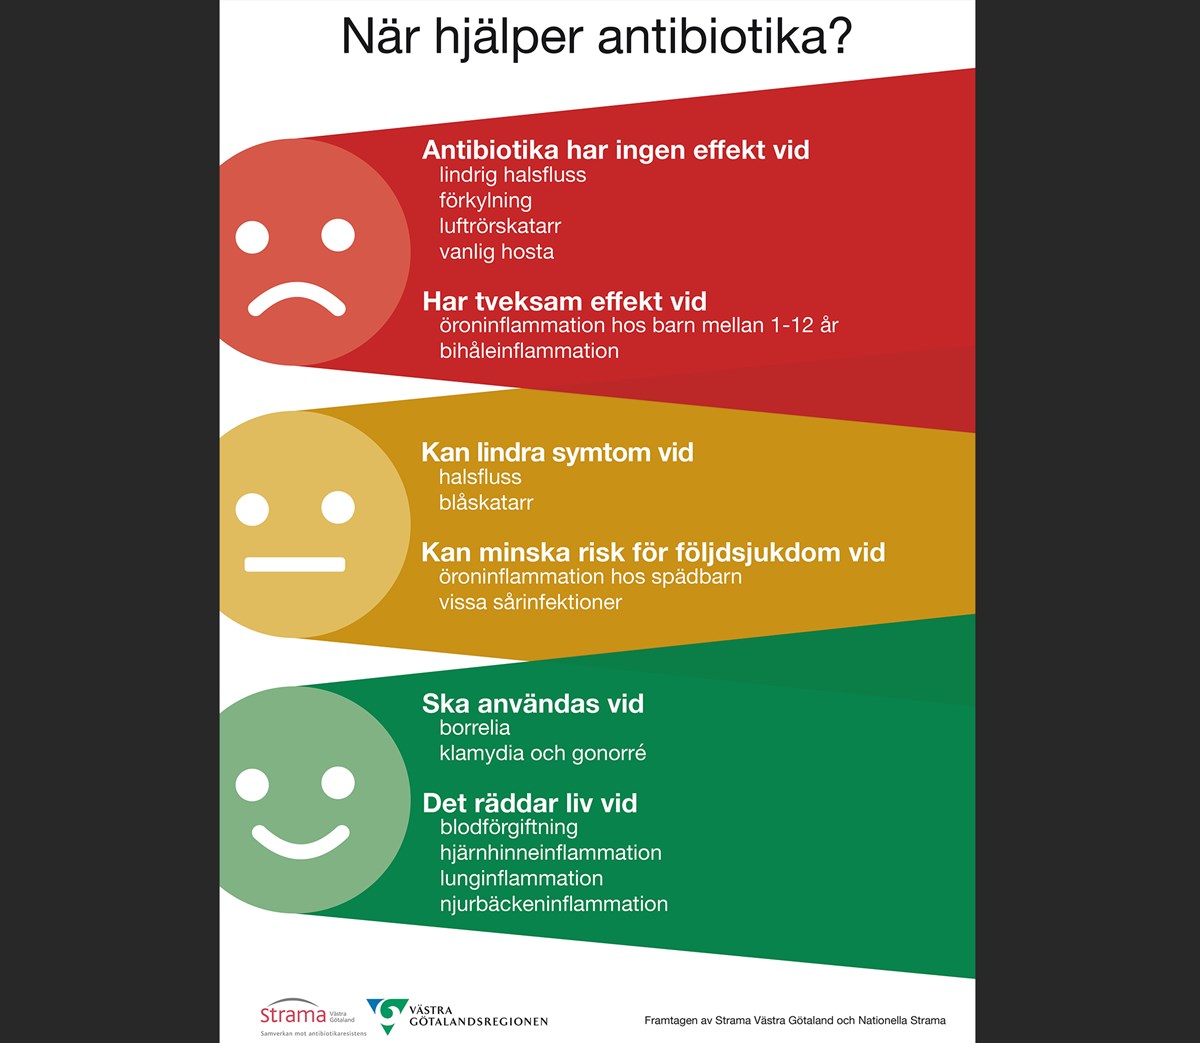 bekrivning av när antibiotika hjälper och inte hjälper